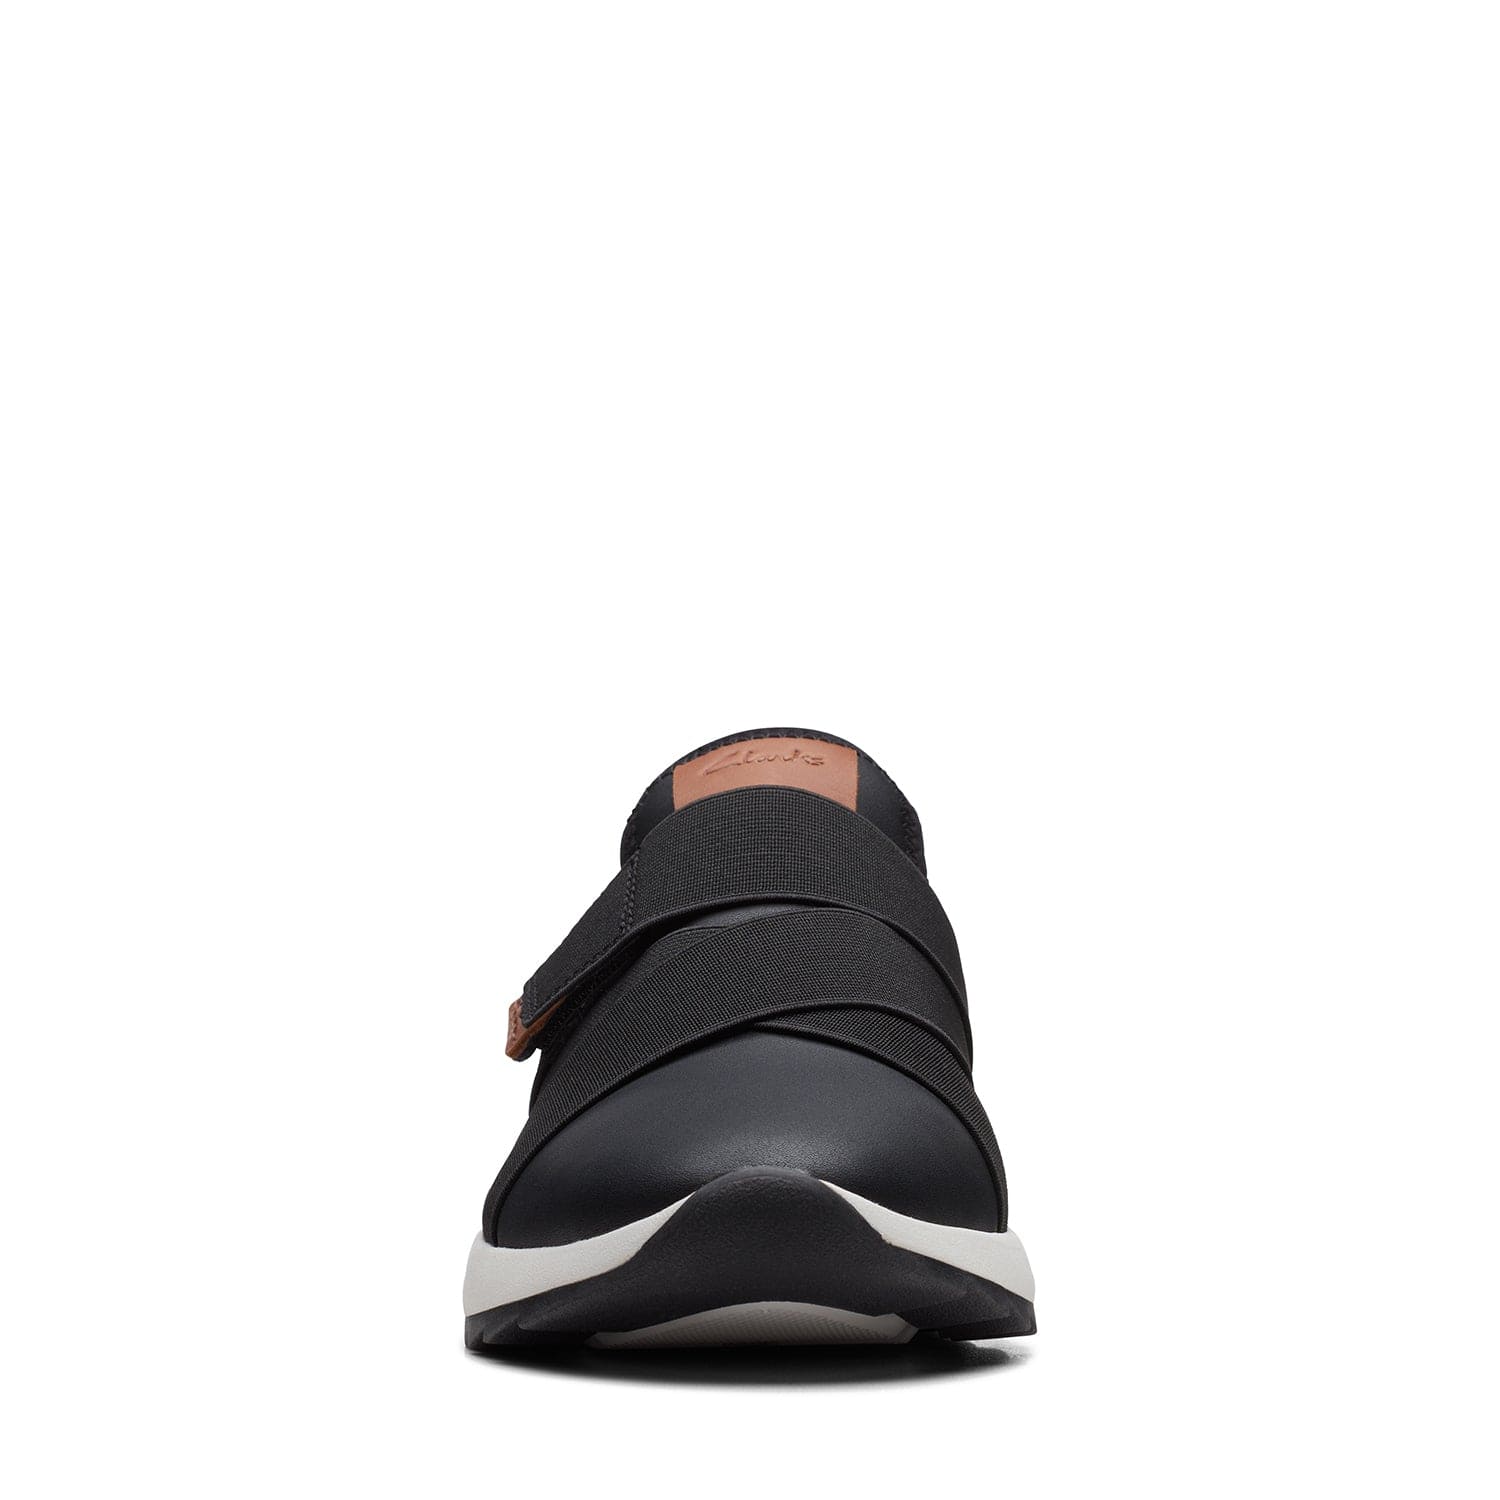 Clarks Dashlite Strap - Shoes - Black Leather - 261704364 - D Width (Standard Fit)